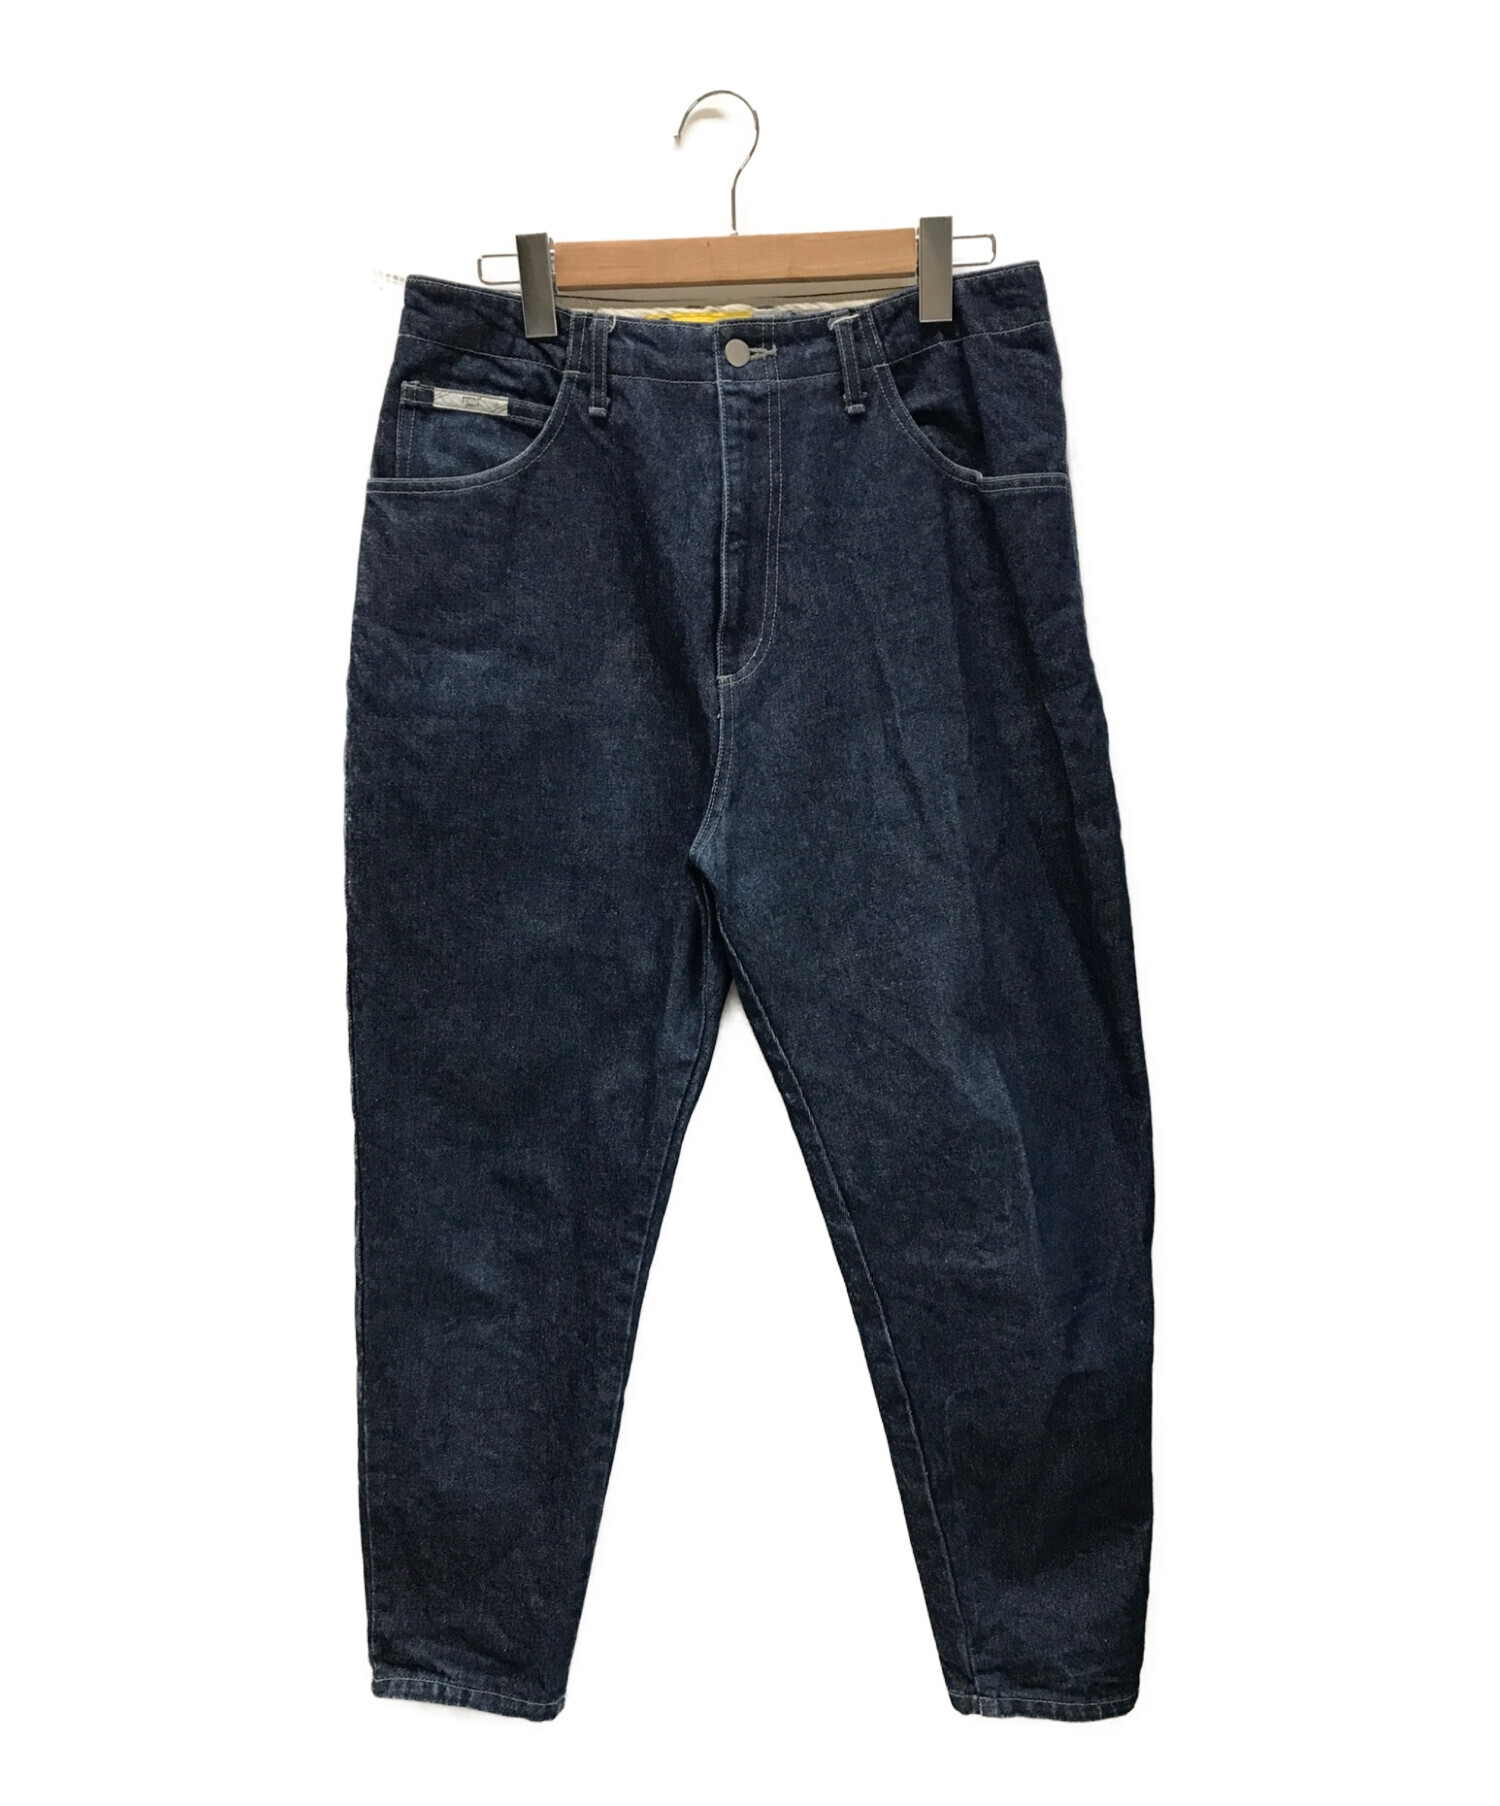 gourmet jeans type3 Lean 32